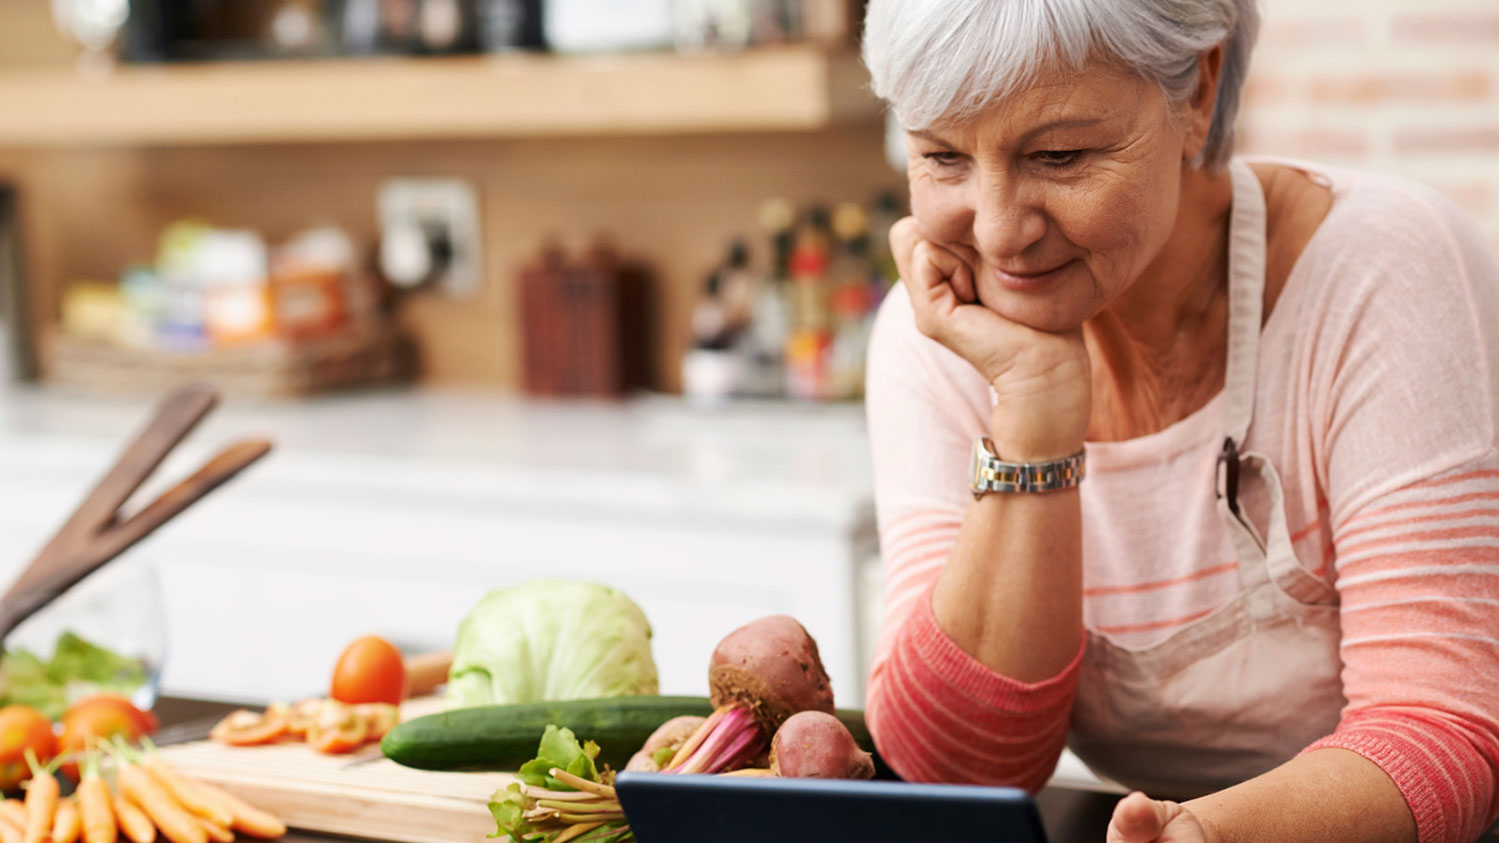 Proper Diet Solutions for Seniors